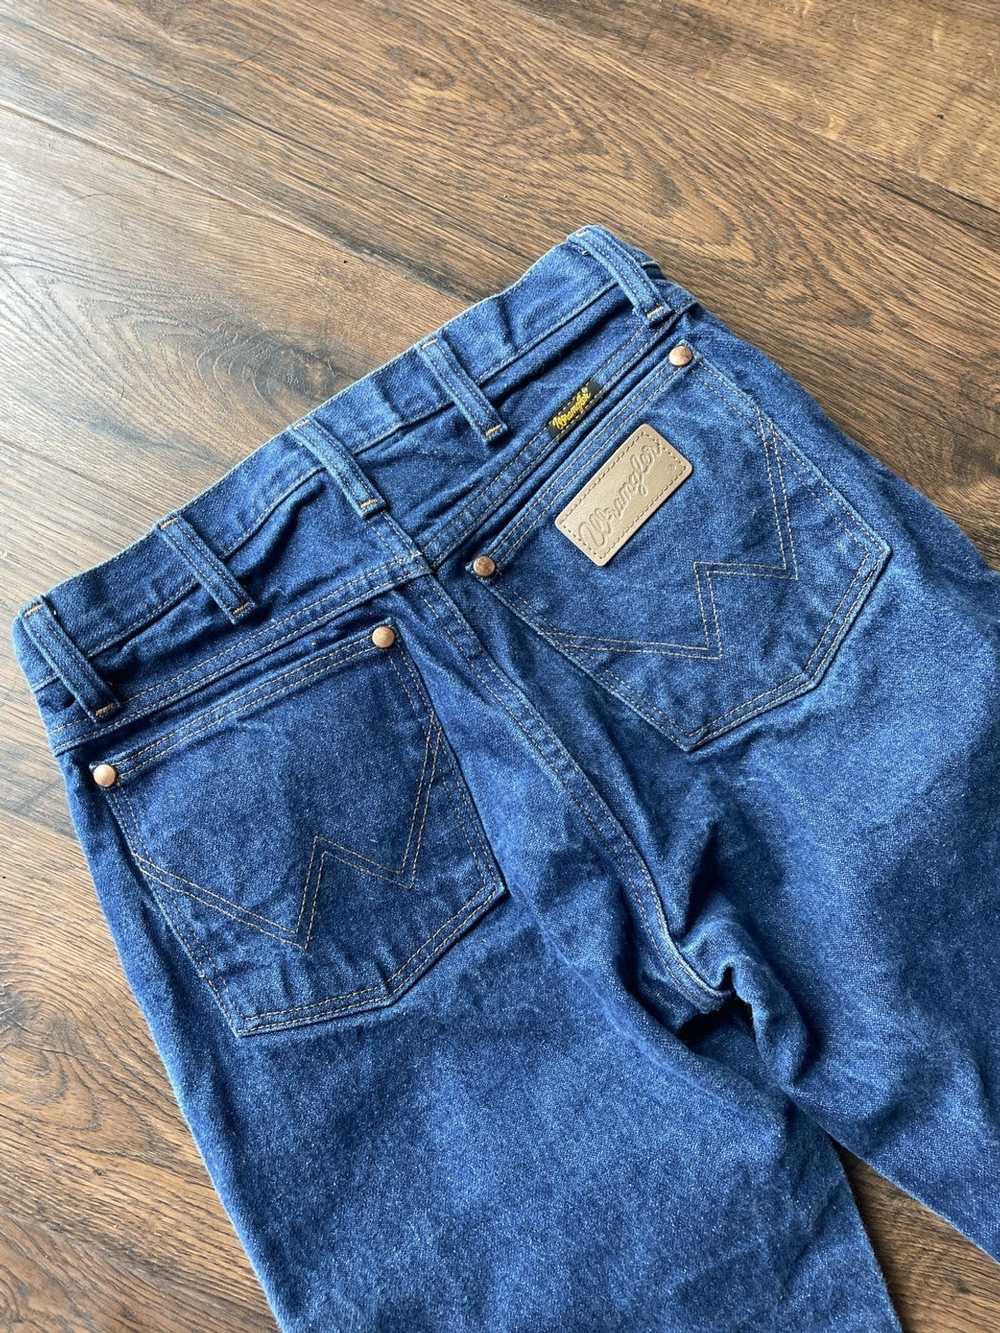 Wrangler wrangler jeans - image 4